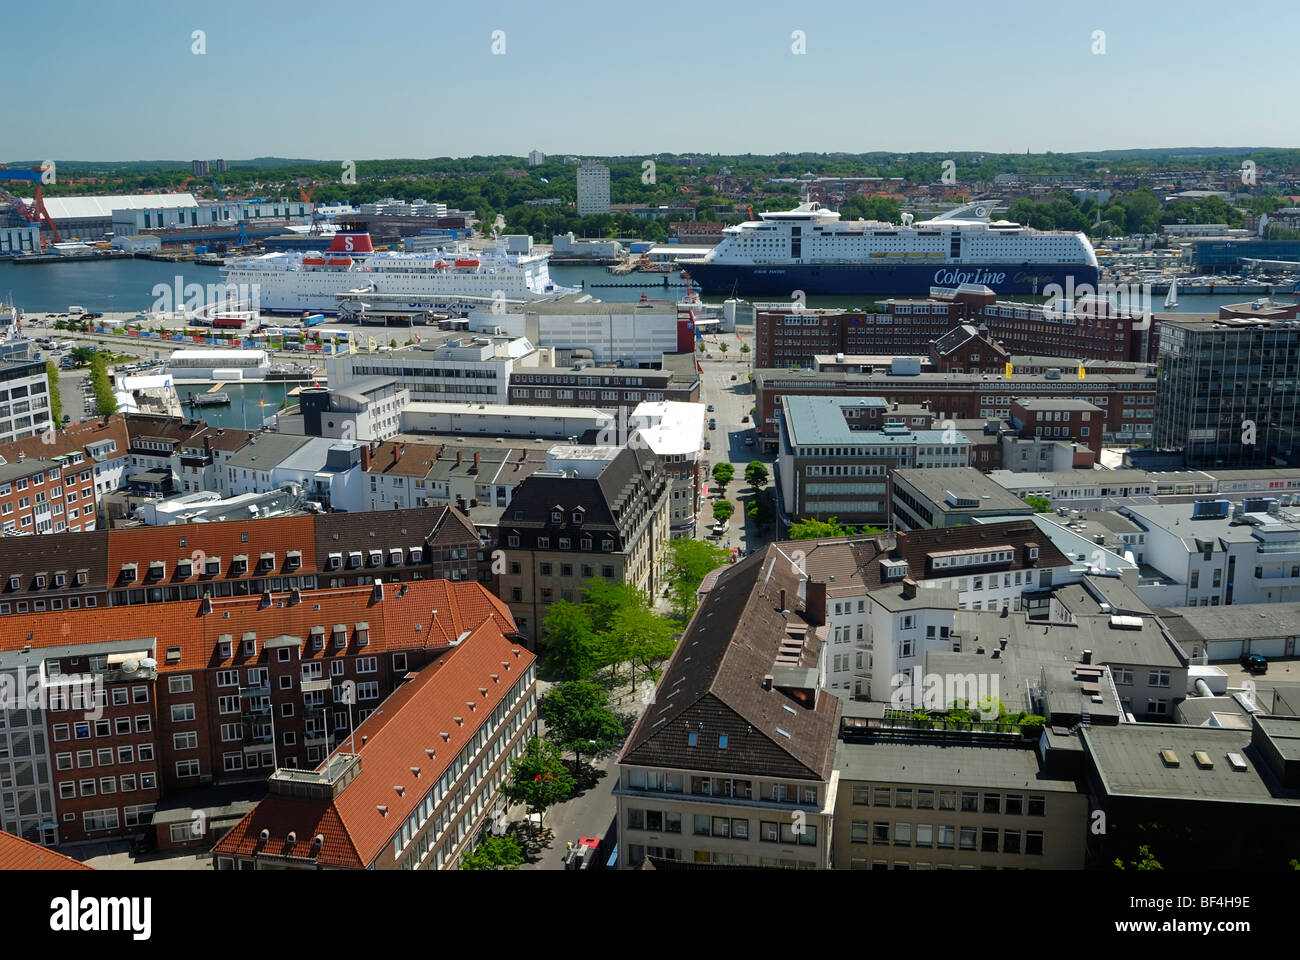 Vue sur la ville de Kiel vers le fjord intérieur avec les ferries de la Stena Line pour les connexions et suédois pour colorline Banque D'Images